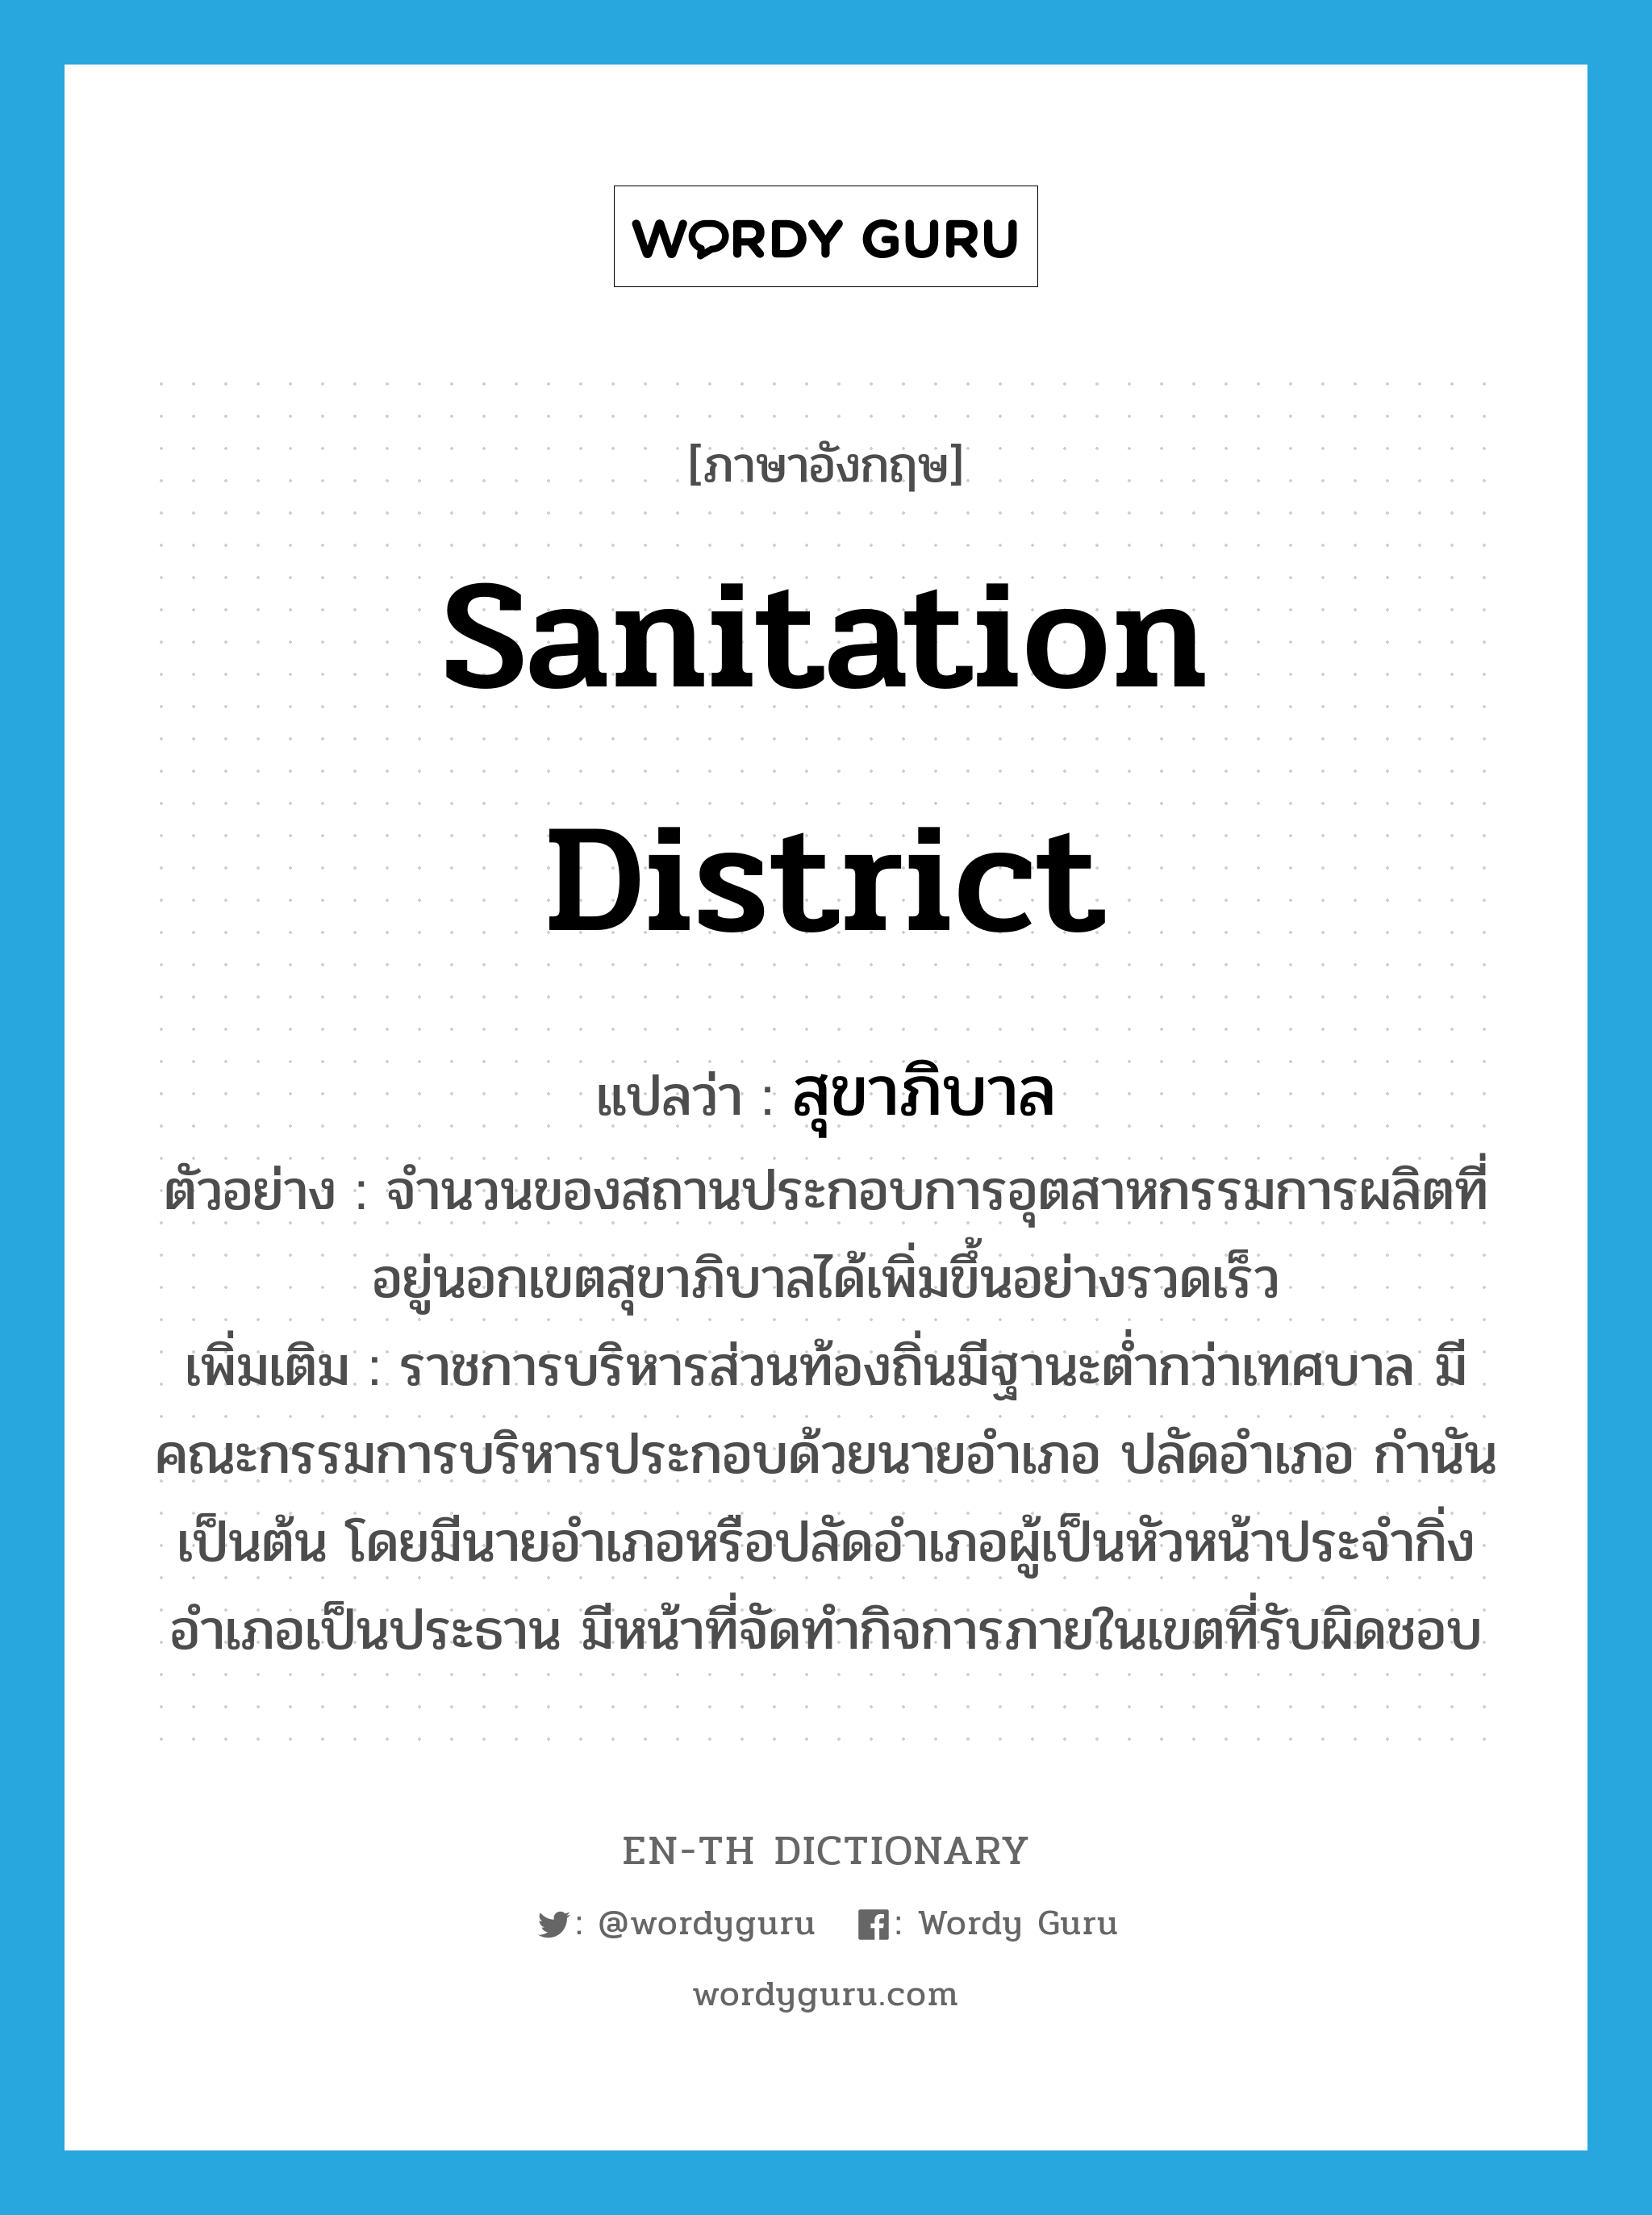 สุขาภิบาล ภาษาอังกฤษ?, คำศัพท์ภาษาอังกฤษ สุขาภิบาล แปลว่า sanitation district ประเภท N ตัวอย่าง จำนวนของสถานประกอบการอุตสาหกรรมการผลิตที่อยู่นอกเขตสุขาภิบาลได้เพิ่มขึ้นอย่างรวดเร็ว เพิ่มเติม ราชการบริหารส่วนท้องถิ่นมีฐานะต่ำกว่าเทศบาล มีคณะกรรมการบริหารประกอบด้วยนายอำเภอ ปลัดอำเภอ กำนัน เป็นต้น โดยมีนายอำเภอหรือปลัดอำเภอผู้เป็นหัวหน้าประจำกิ่งอำเภอเป็นประธาน มีหน้าที่จัดทำกิจการภายในเขตที่รับผิดชอบ หมวด N